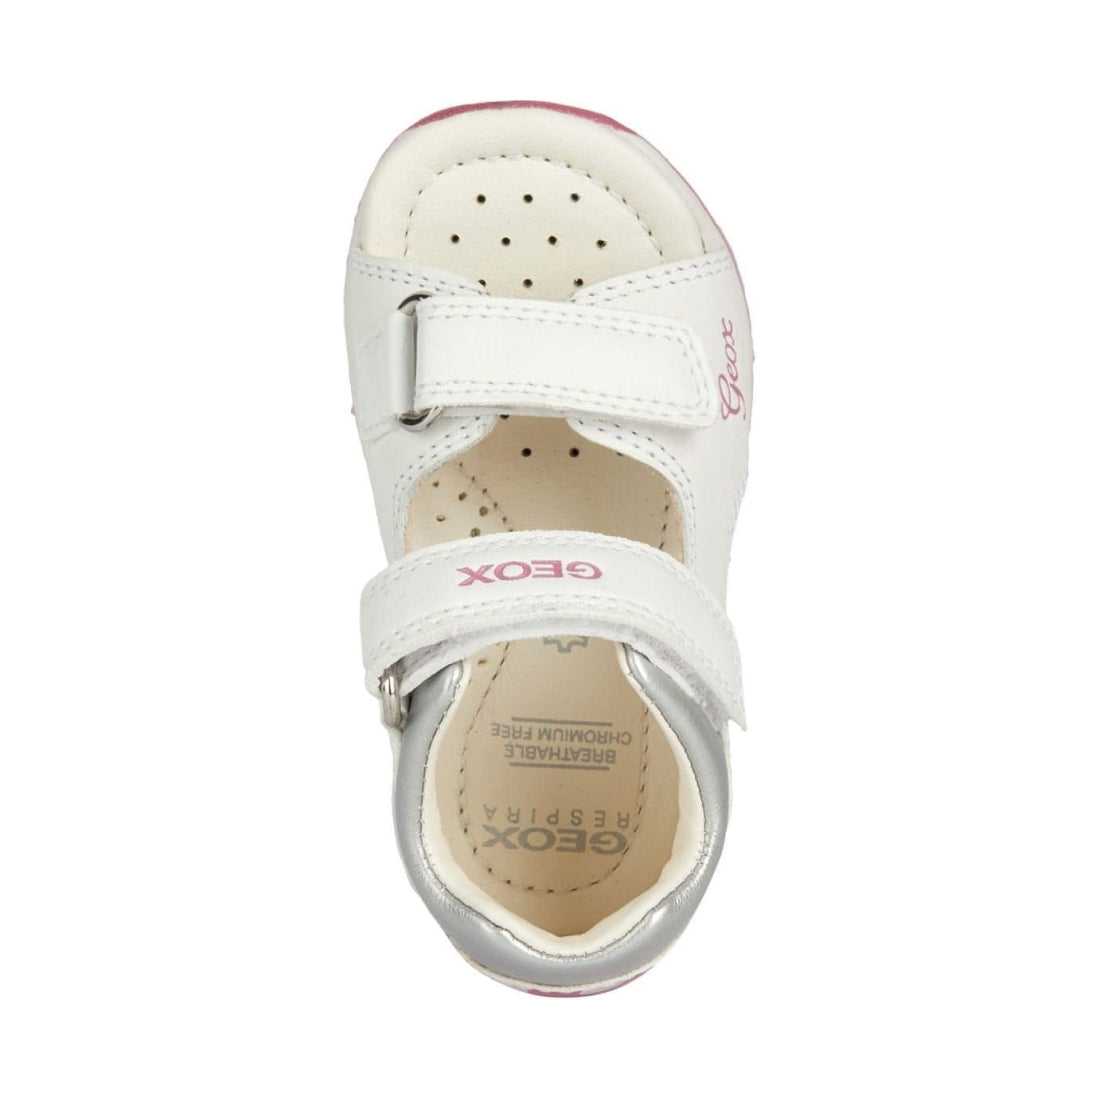 Geox girls white, fuchsia sandals tapuz | Vilbury London